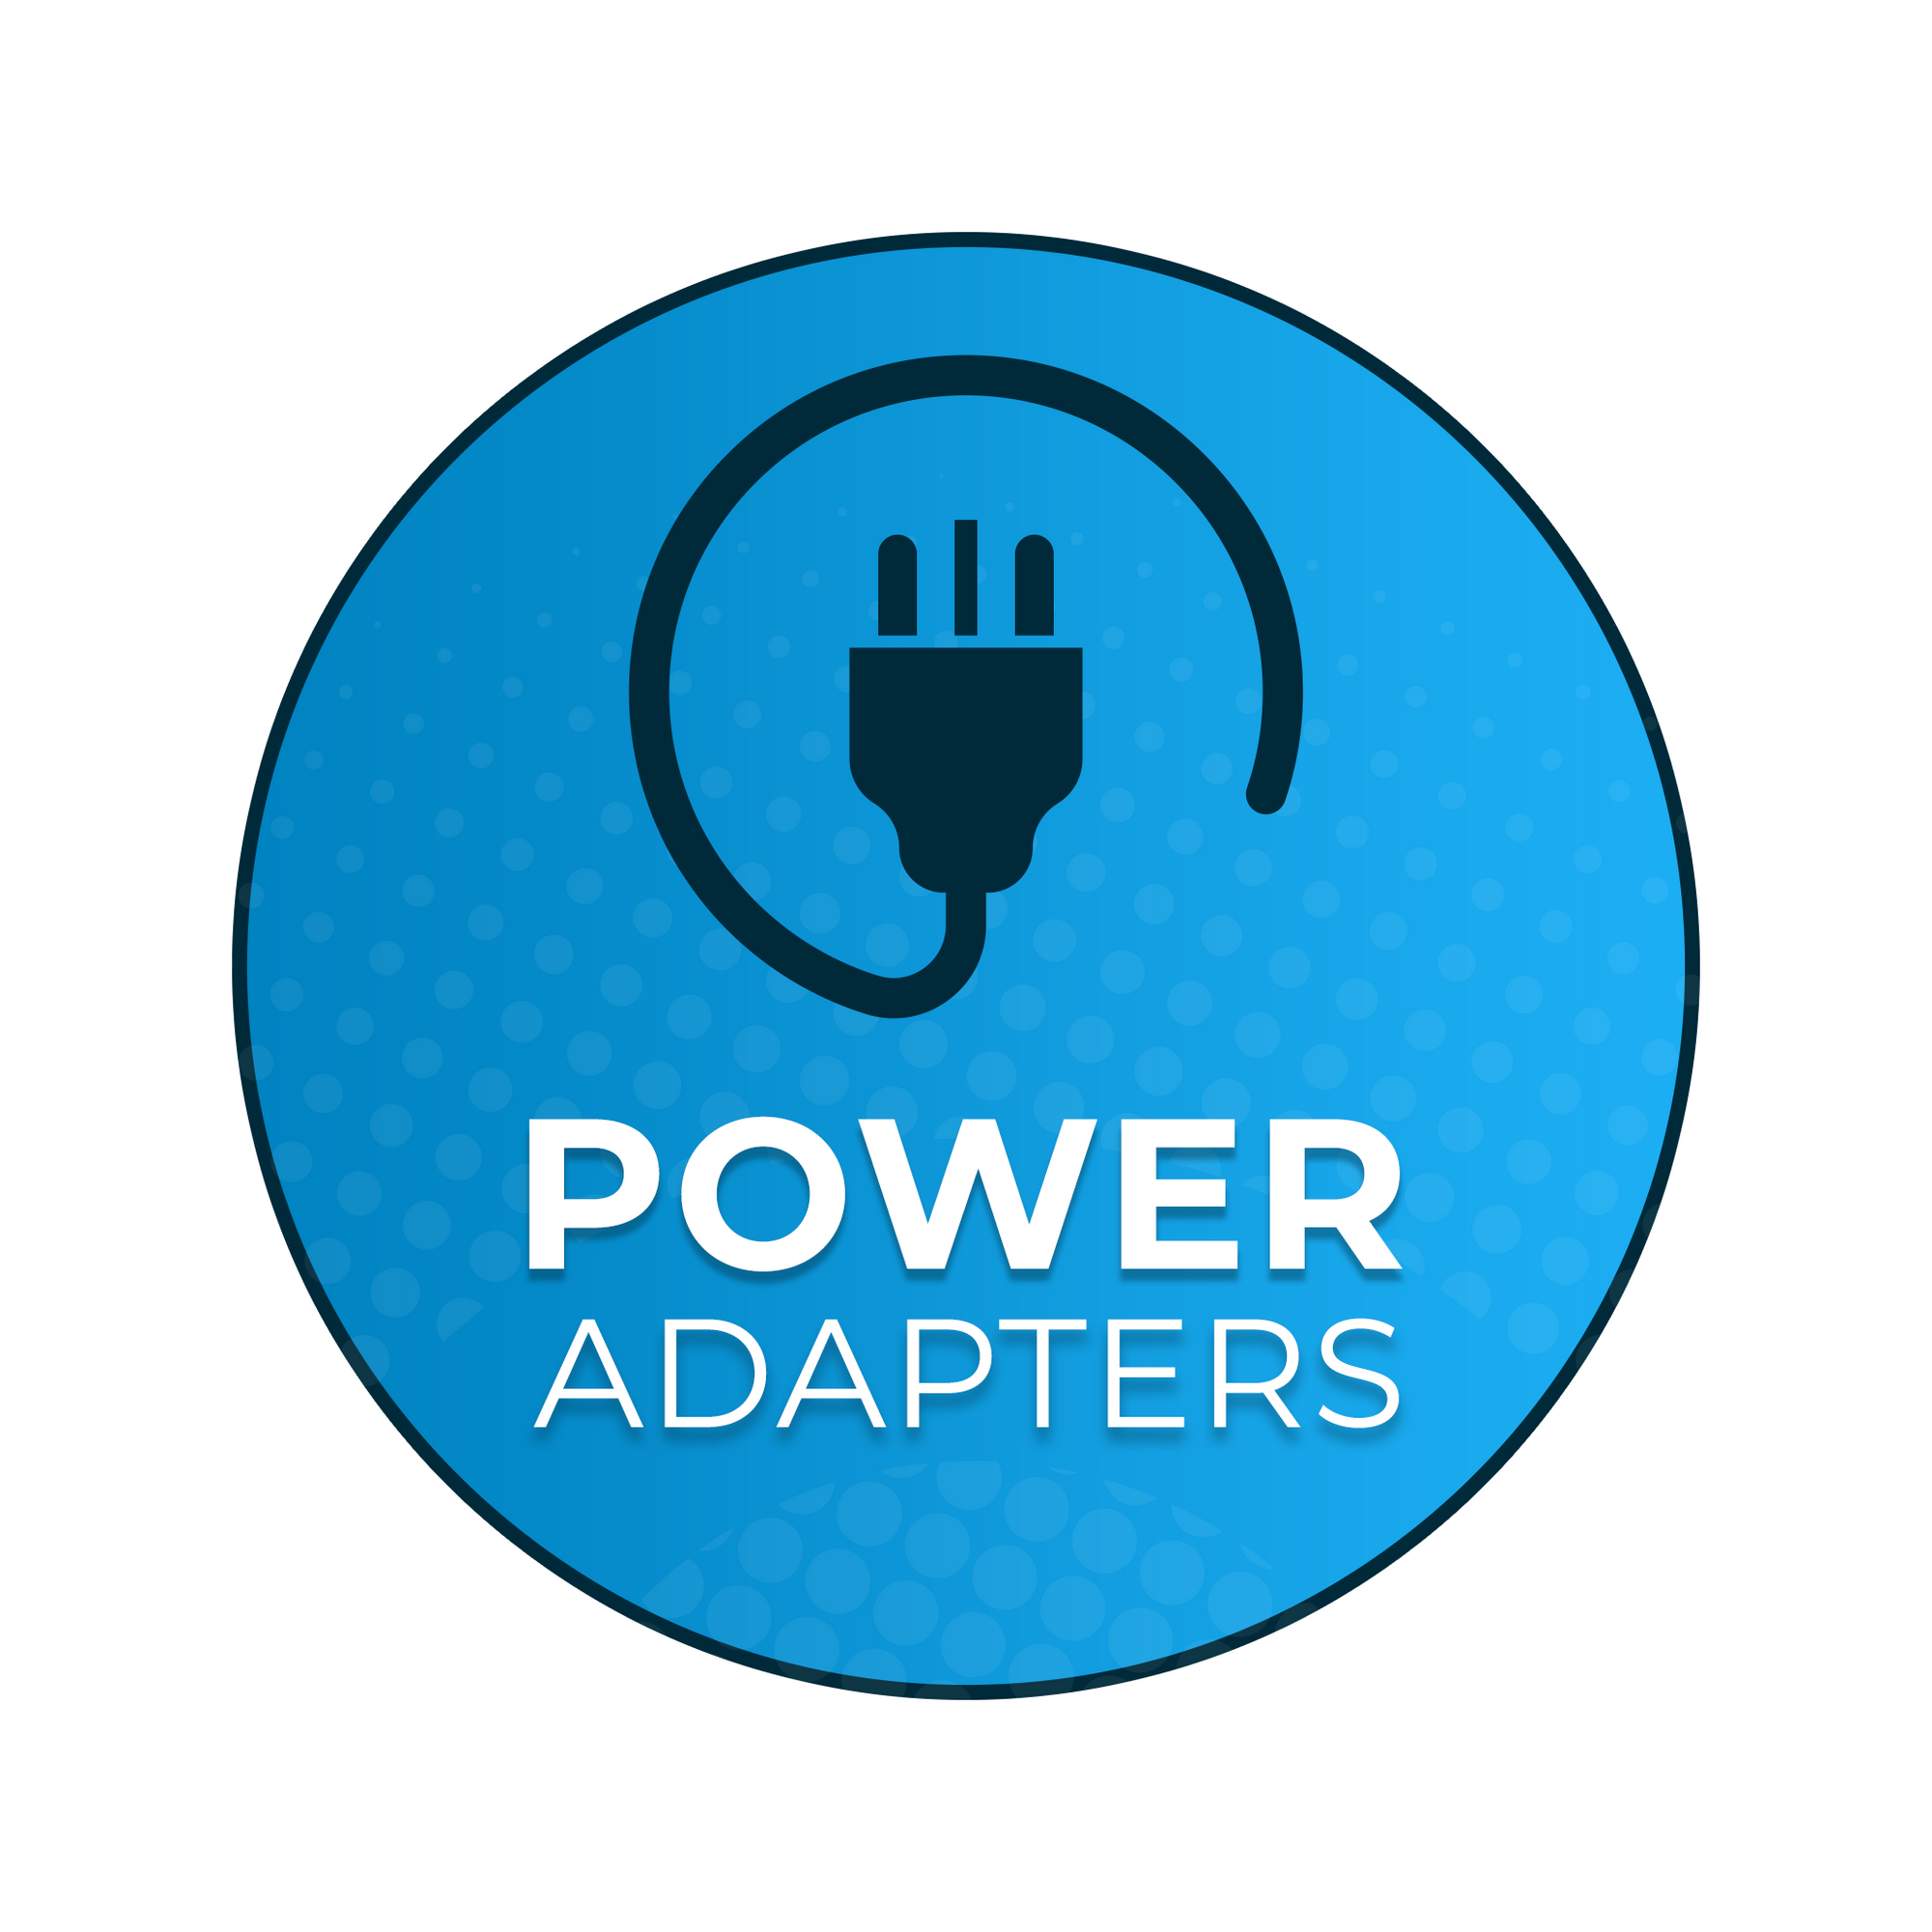 UK Power Adapter: EX-3, GT, GT+, Row